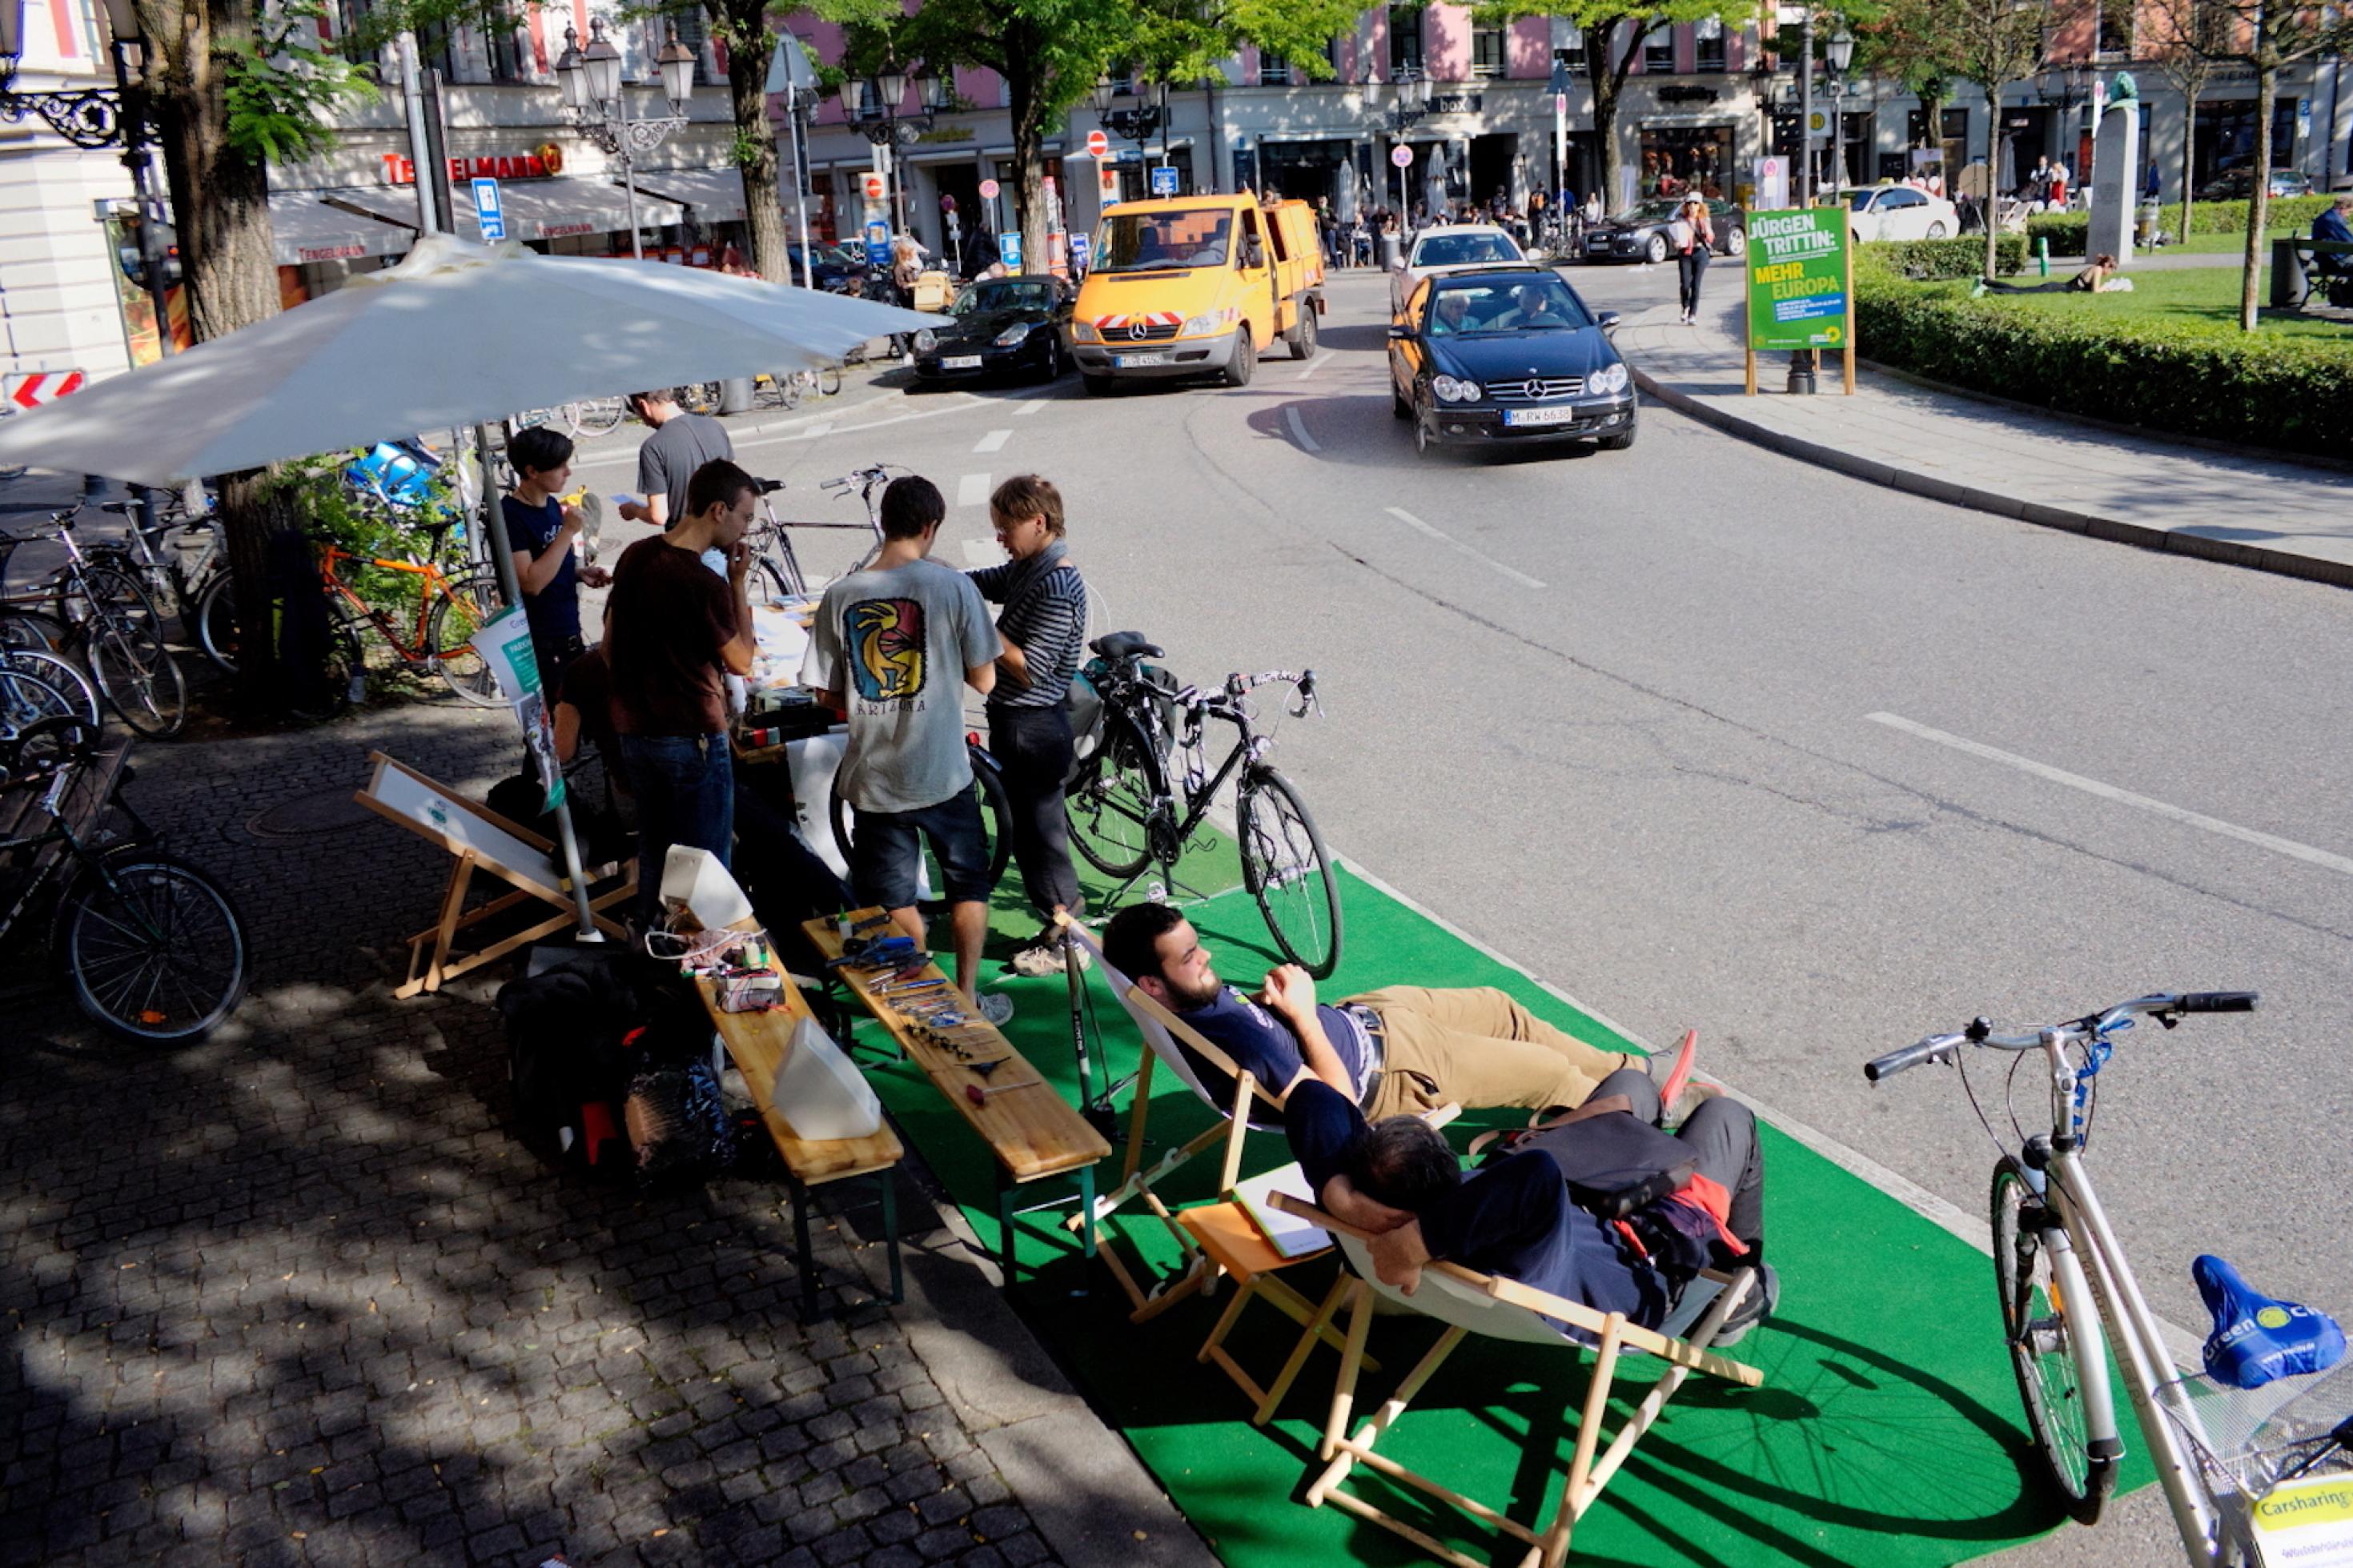 Aktivisten haben einer beiden Seiten der zweispurigen Straßen Rasen ausgerollt und liegen entspannt unter Sonnenschirmen in ihren  Liegestühlen